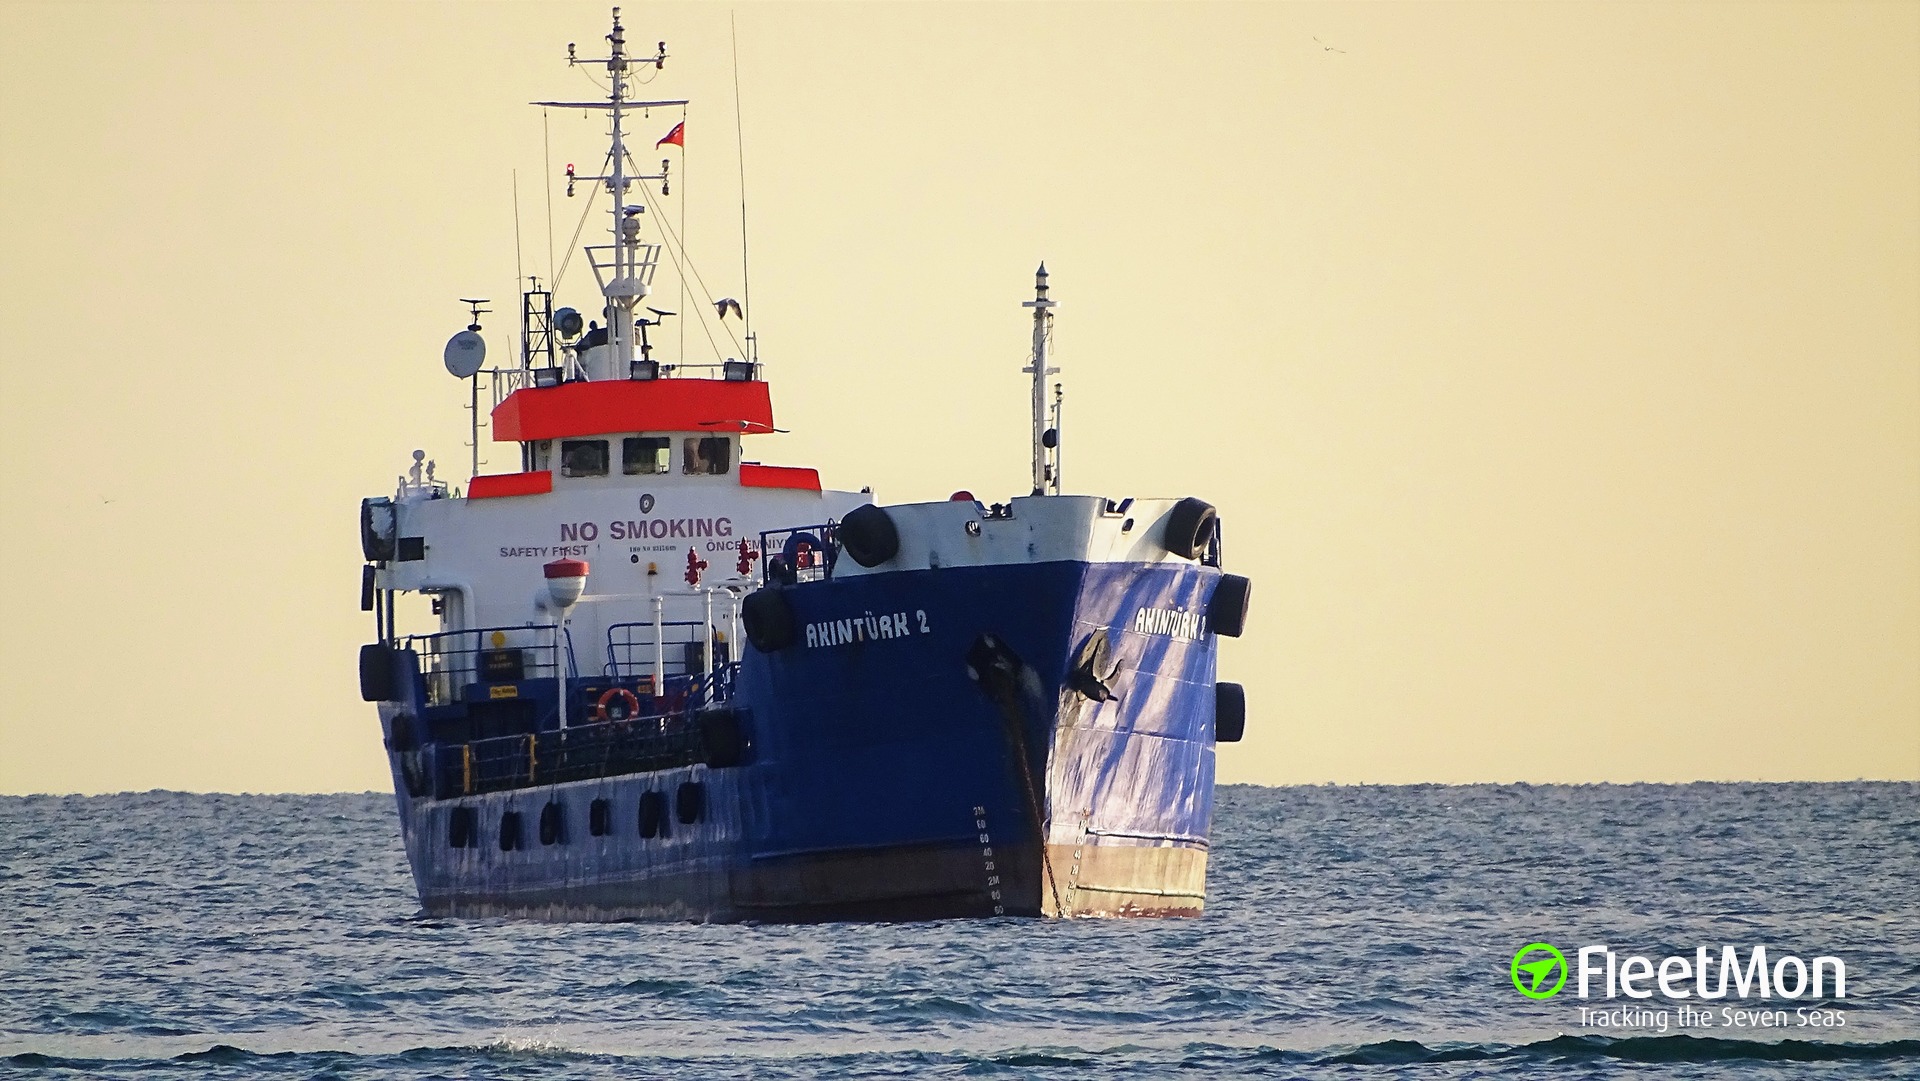 Σε συνεχή παρακολούθηση από το ΠΝ τουρκικό πλοίο:  Μεταφέρει παράνομους μετανάστες ή προετοιμάζεται επεισόδιο;